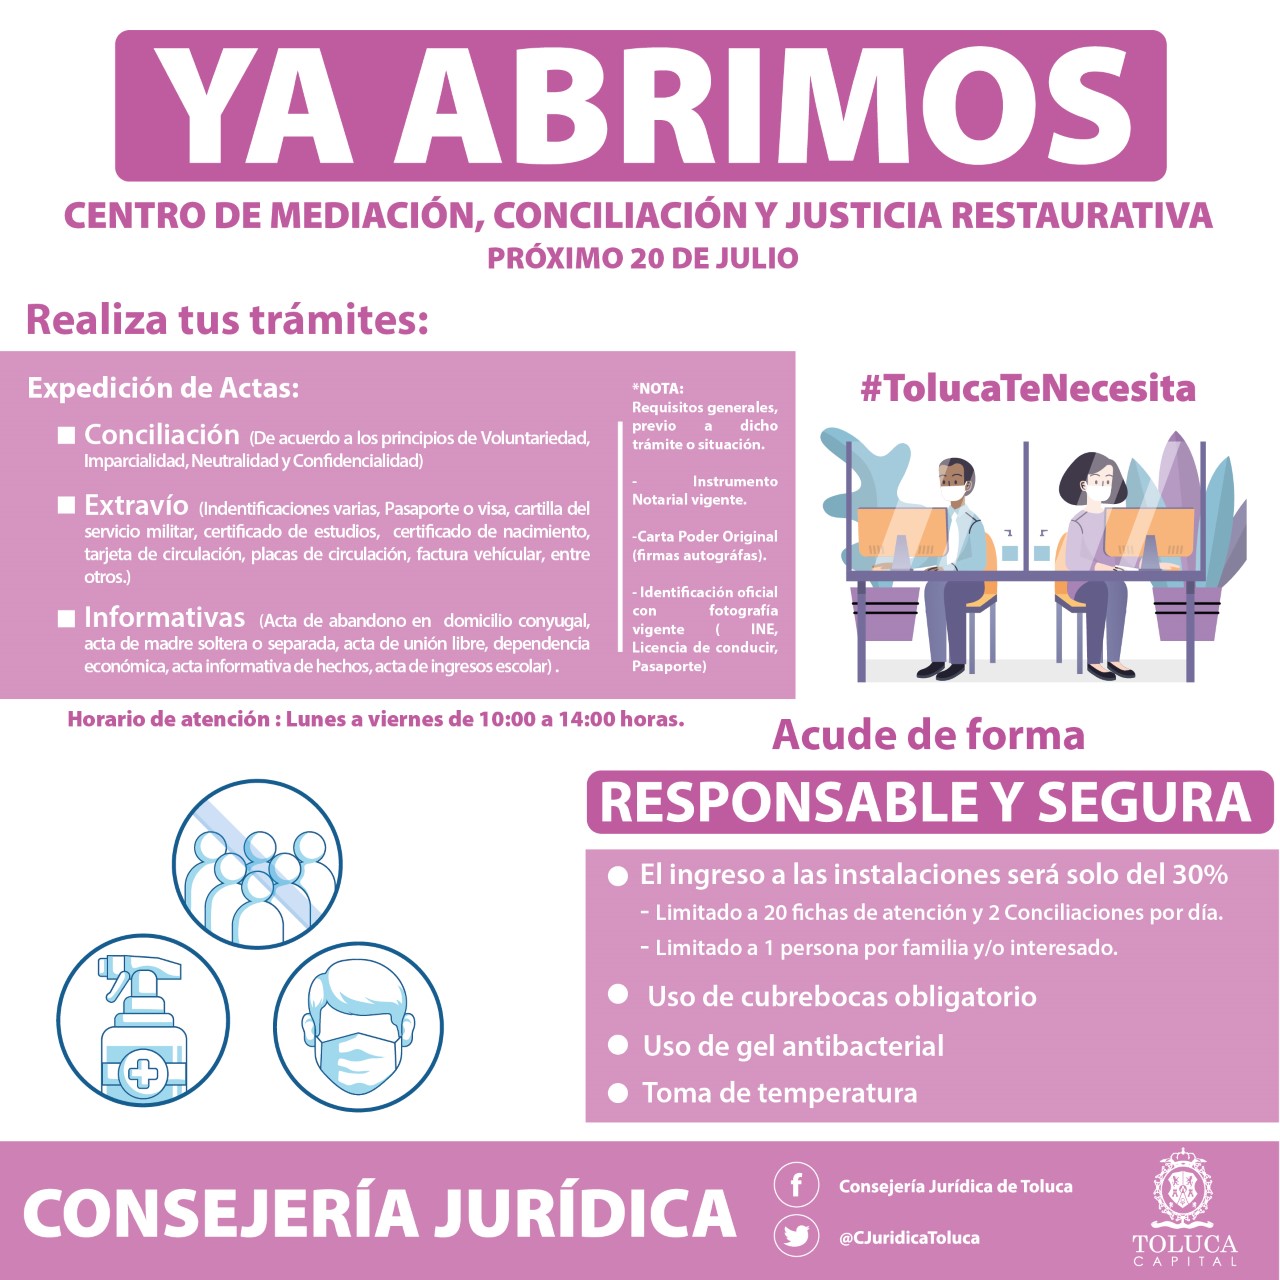 Centro de Mediación, Conciliación y Justicia Restaurativa, abierto a partir del próximo lunes